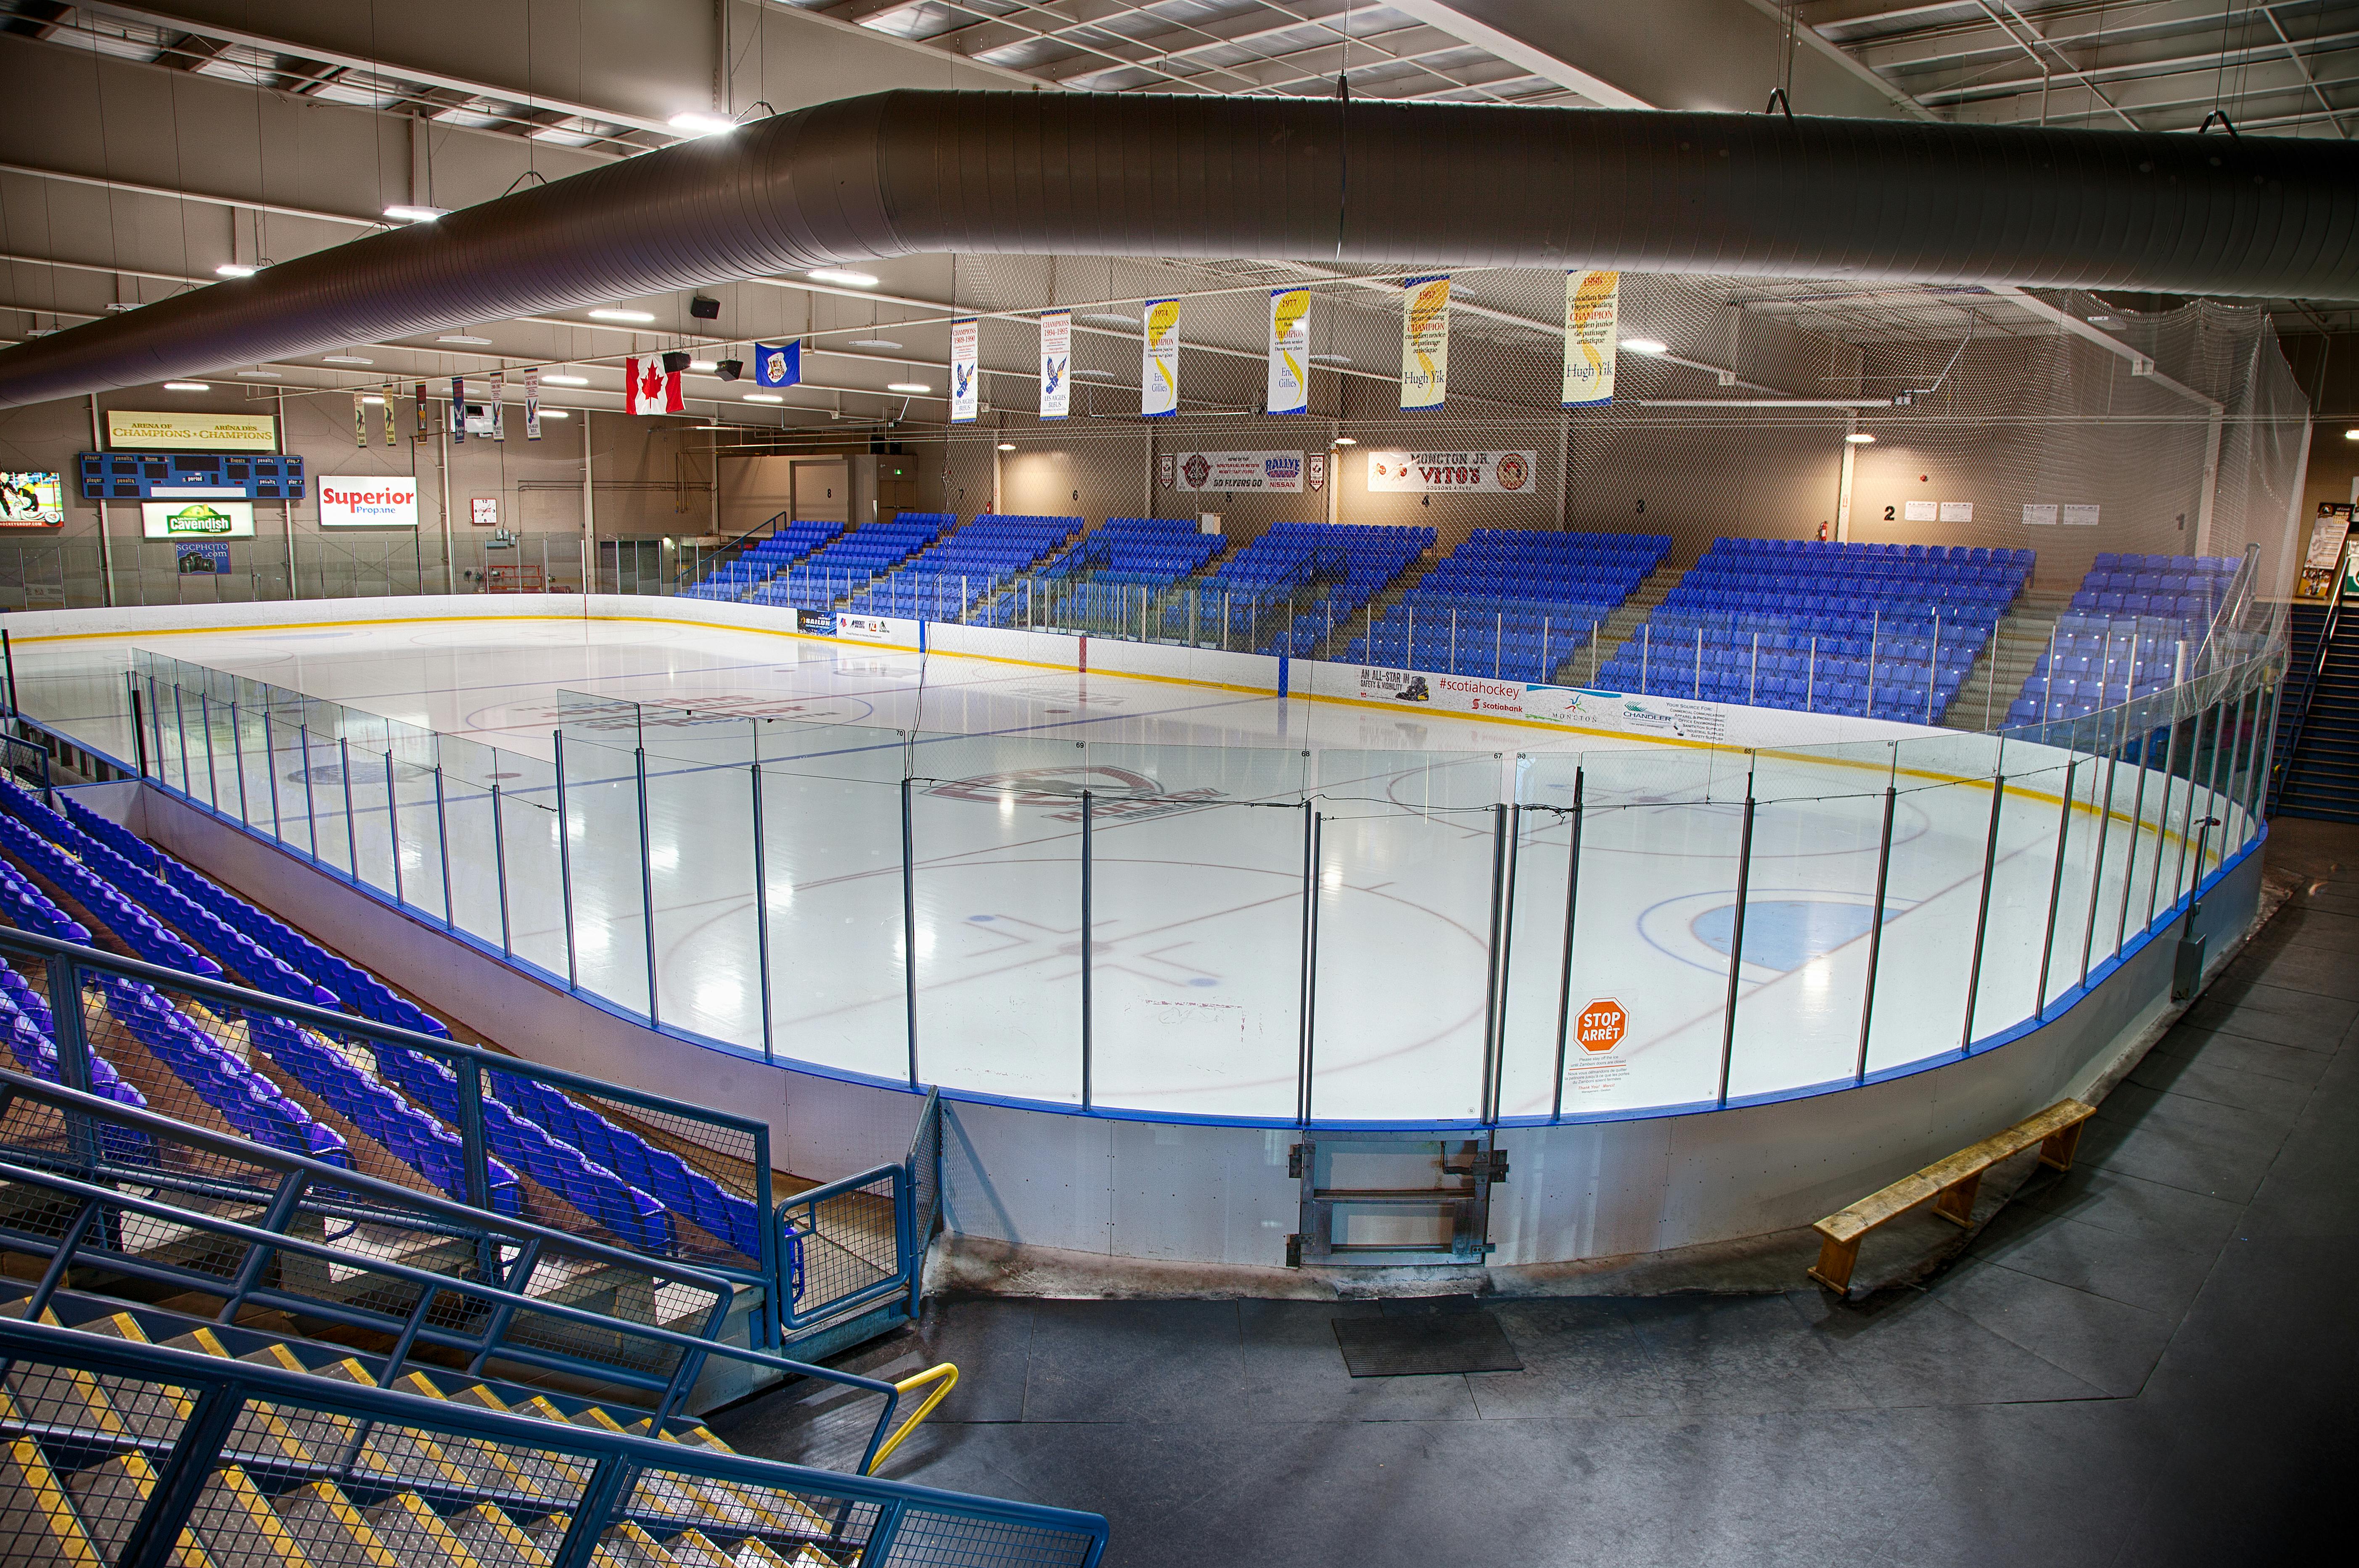 Superior Propane Centre (4-ice)